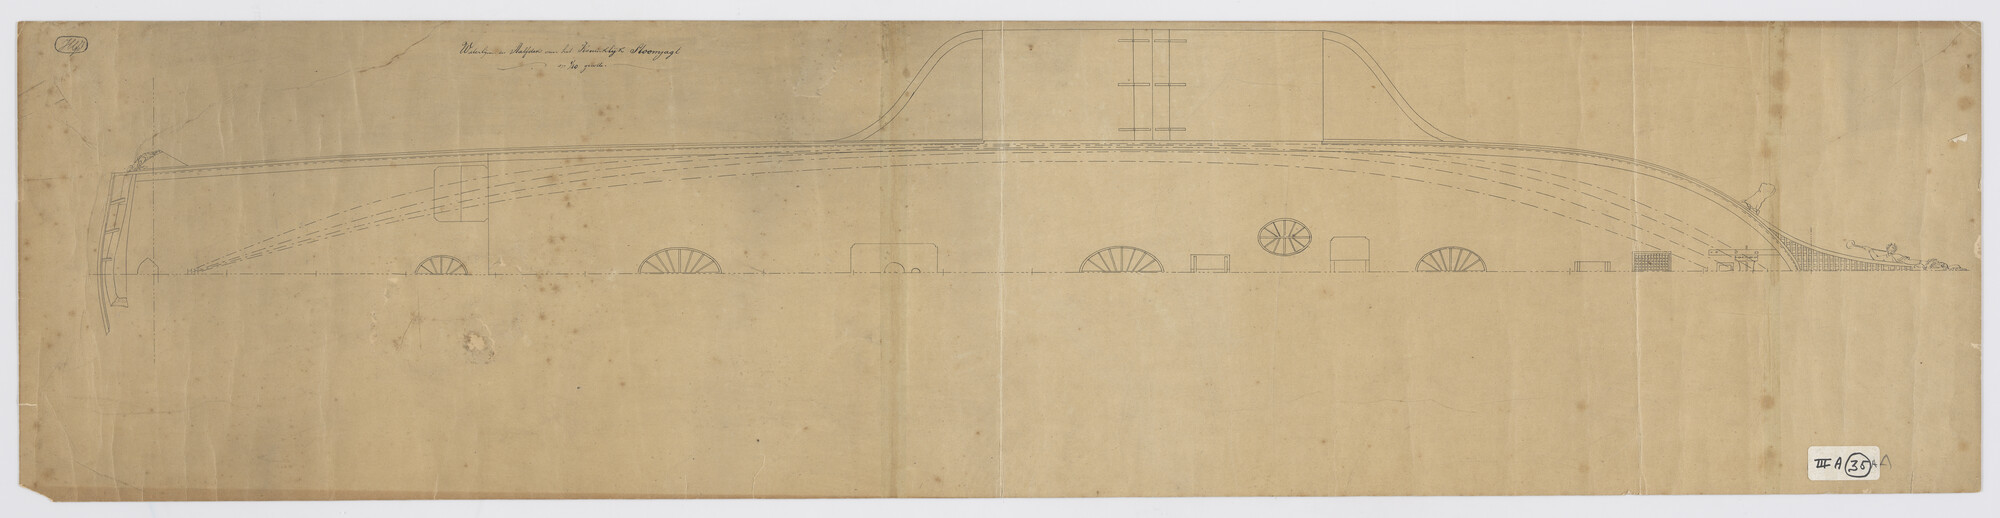 A.0226(04)a; Dekplan van het koninklijk raderstoomjacht 'De Leeuw' 1826; technische tekening